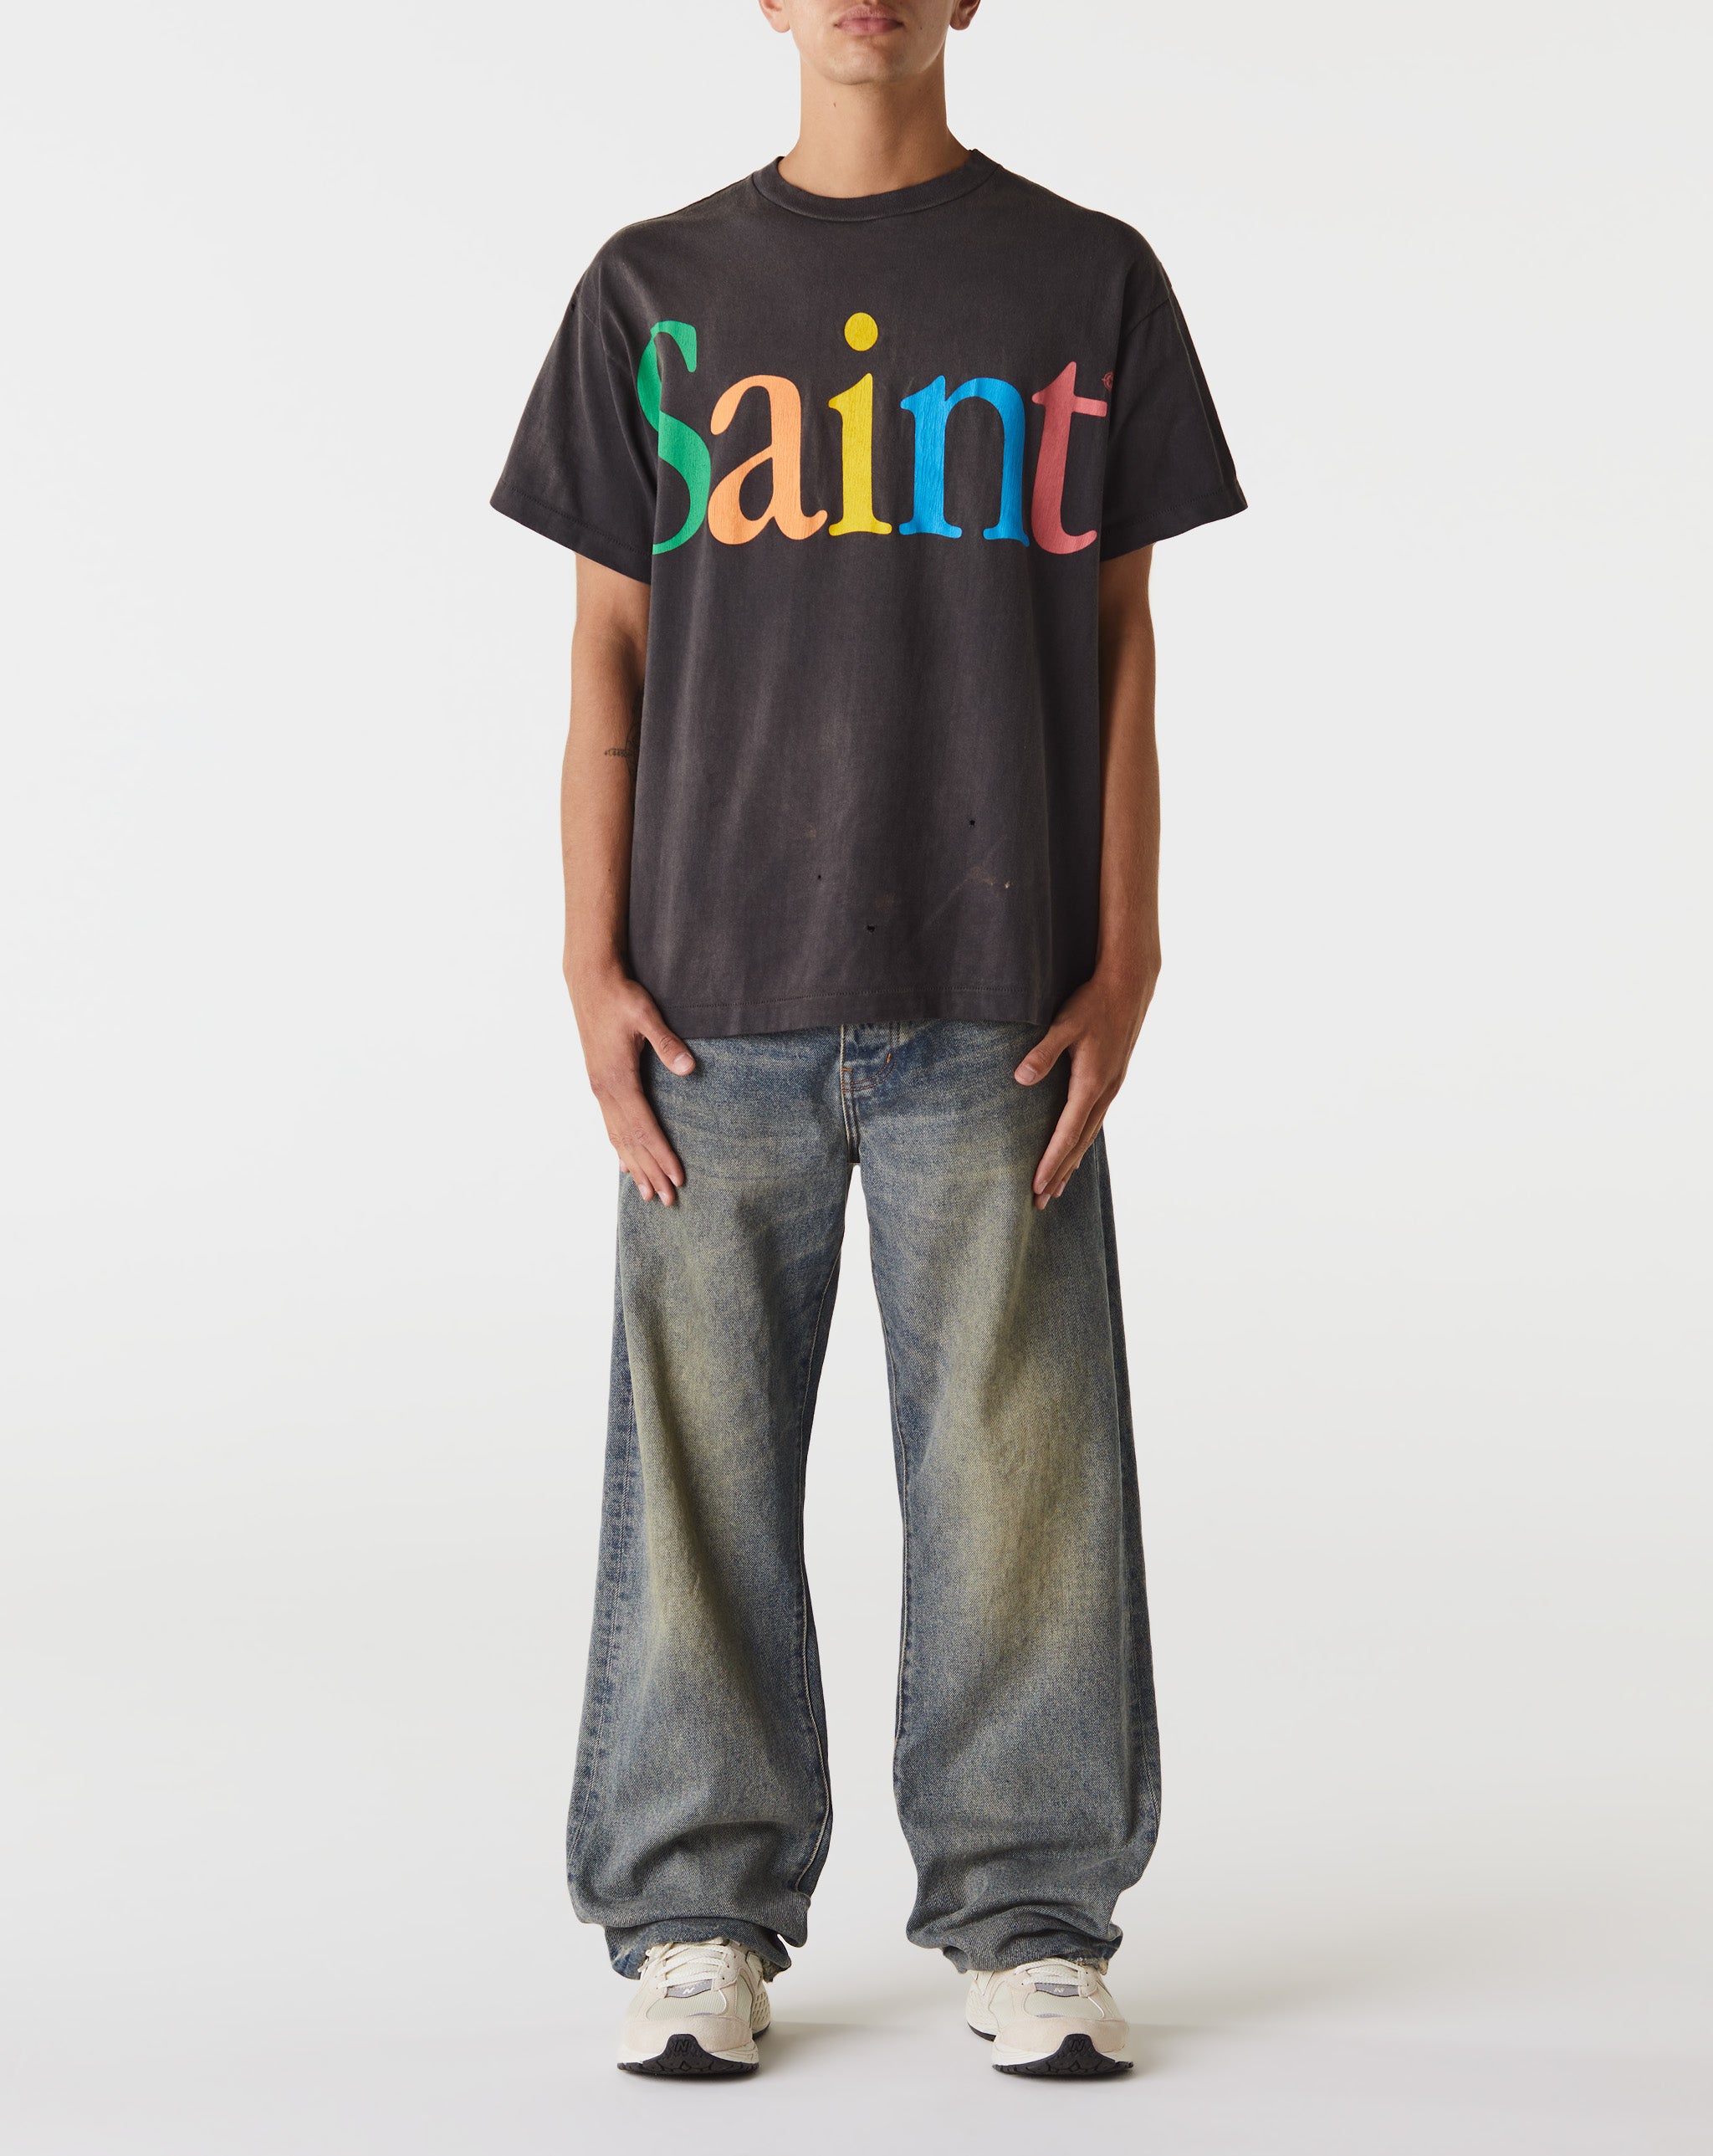 Saint Michael Colorful Saint T-Shirt  - Cheap Urlfreeze Jordan outlet